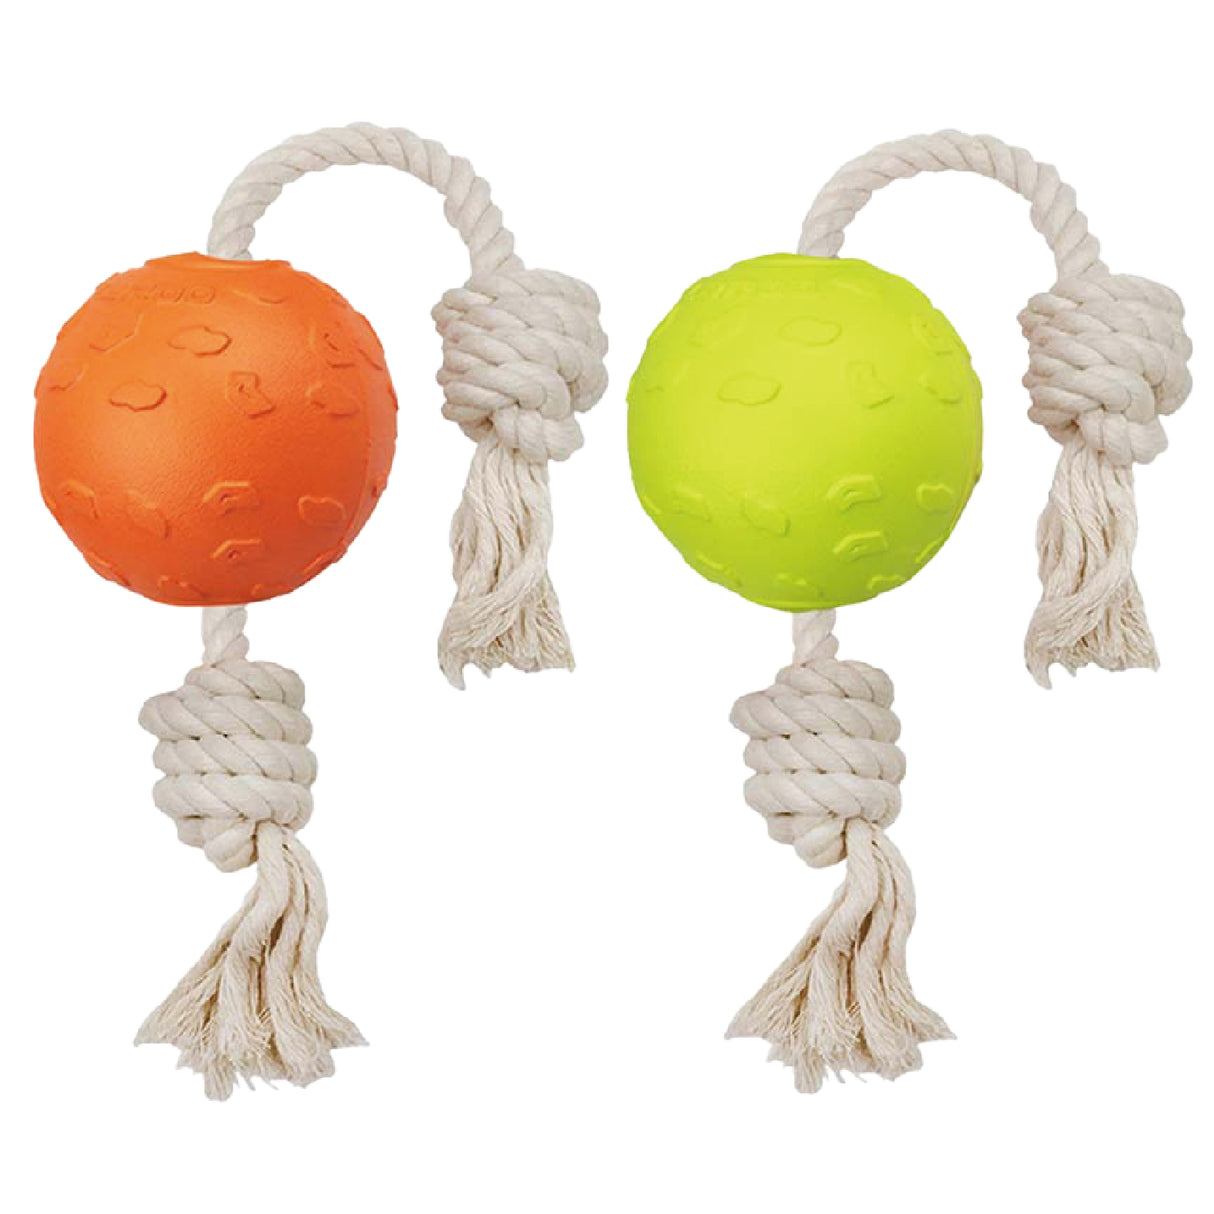 LaRoo萊諾 互動繩球 狗玩具 純棉互動玩具